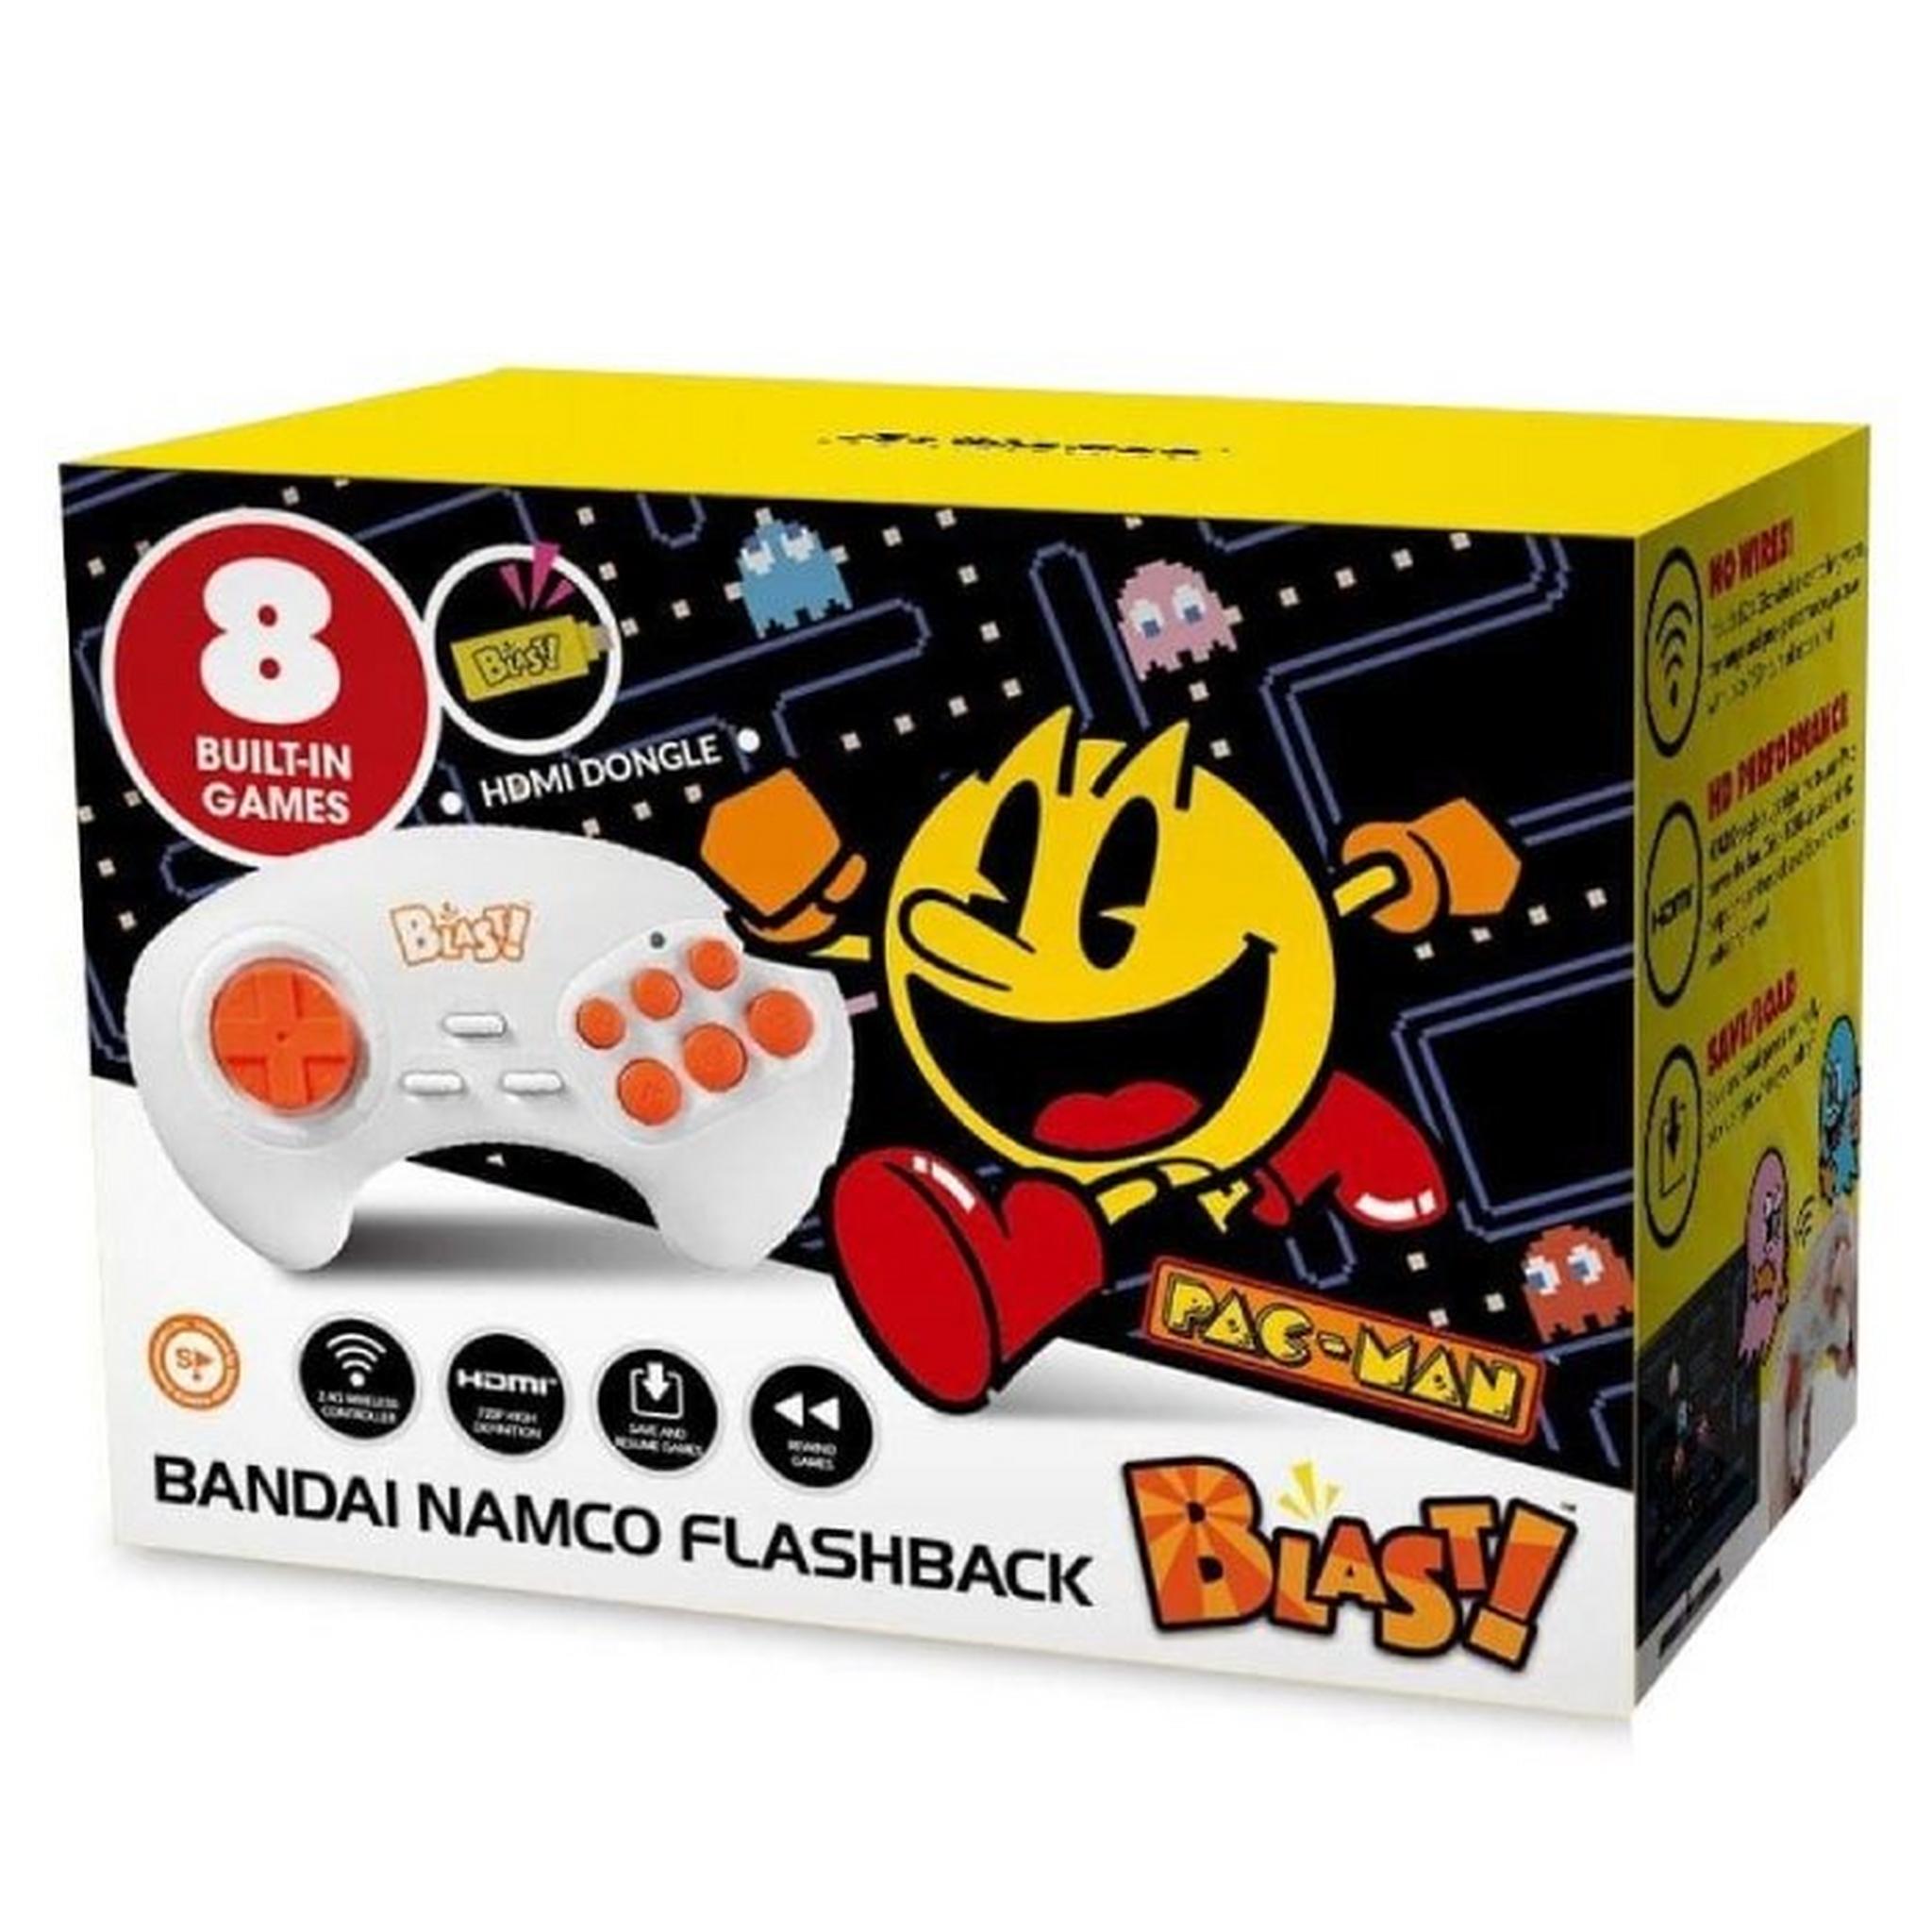 جهاز فلاش باك بلاست بانداي نامكو مع 8 ألعاب مدمجة من آت جيمز